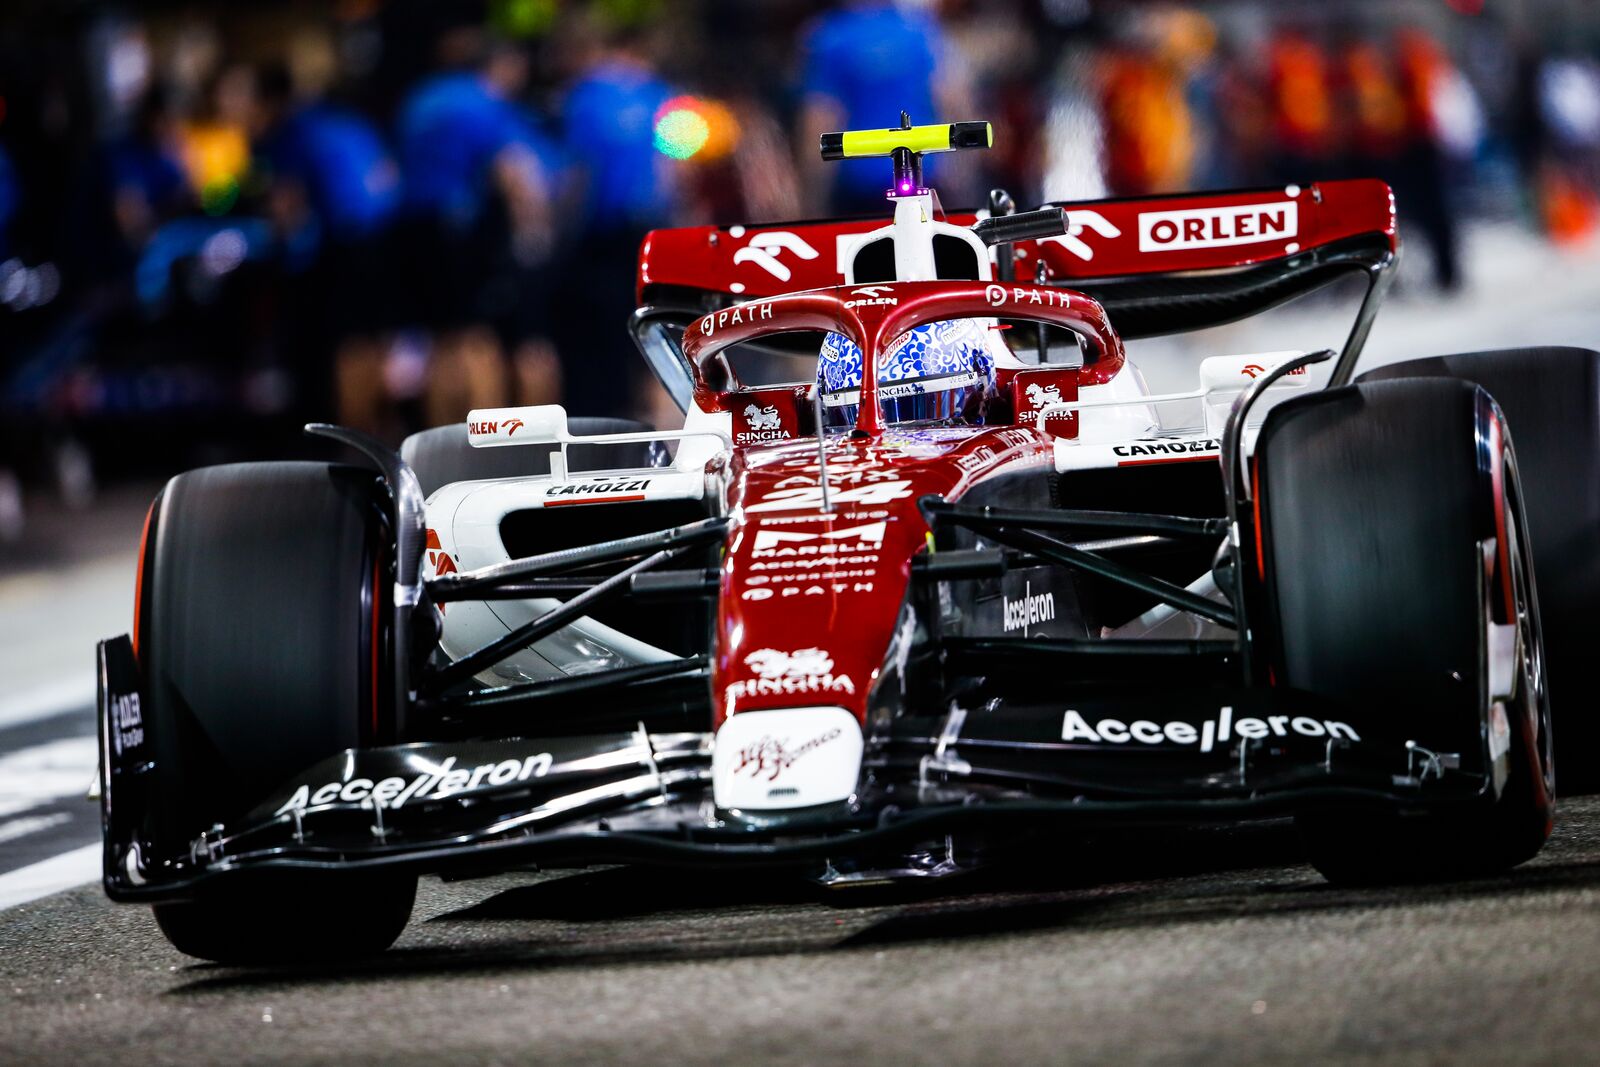 F1 - Grille de départ définitive du GP d'Abou Dhabi